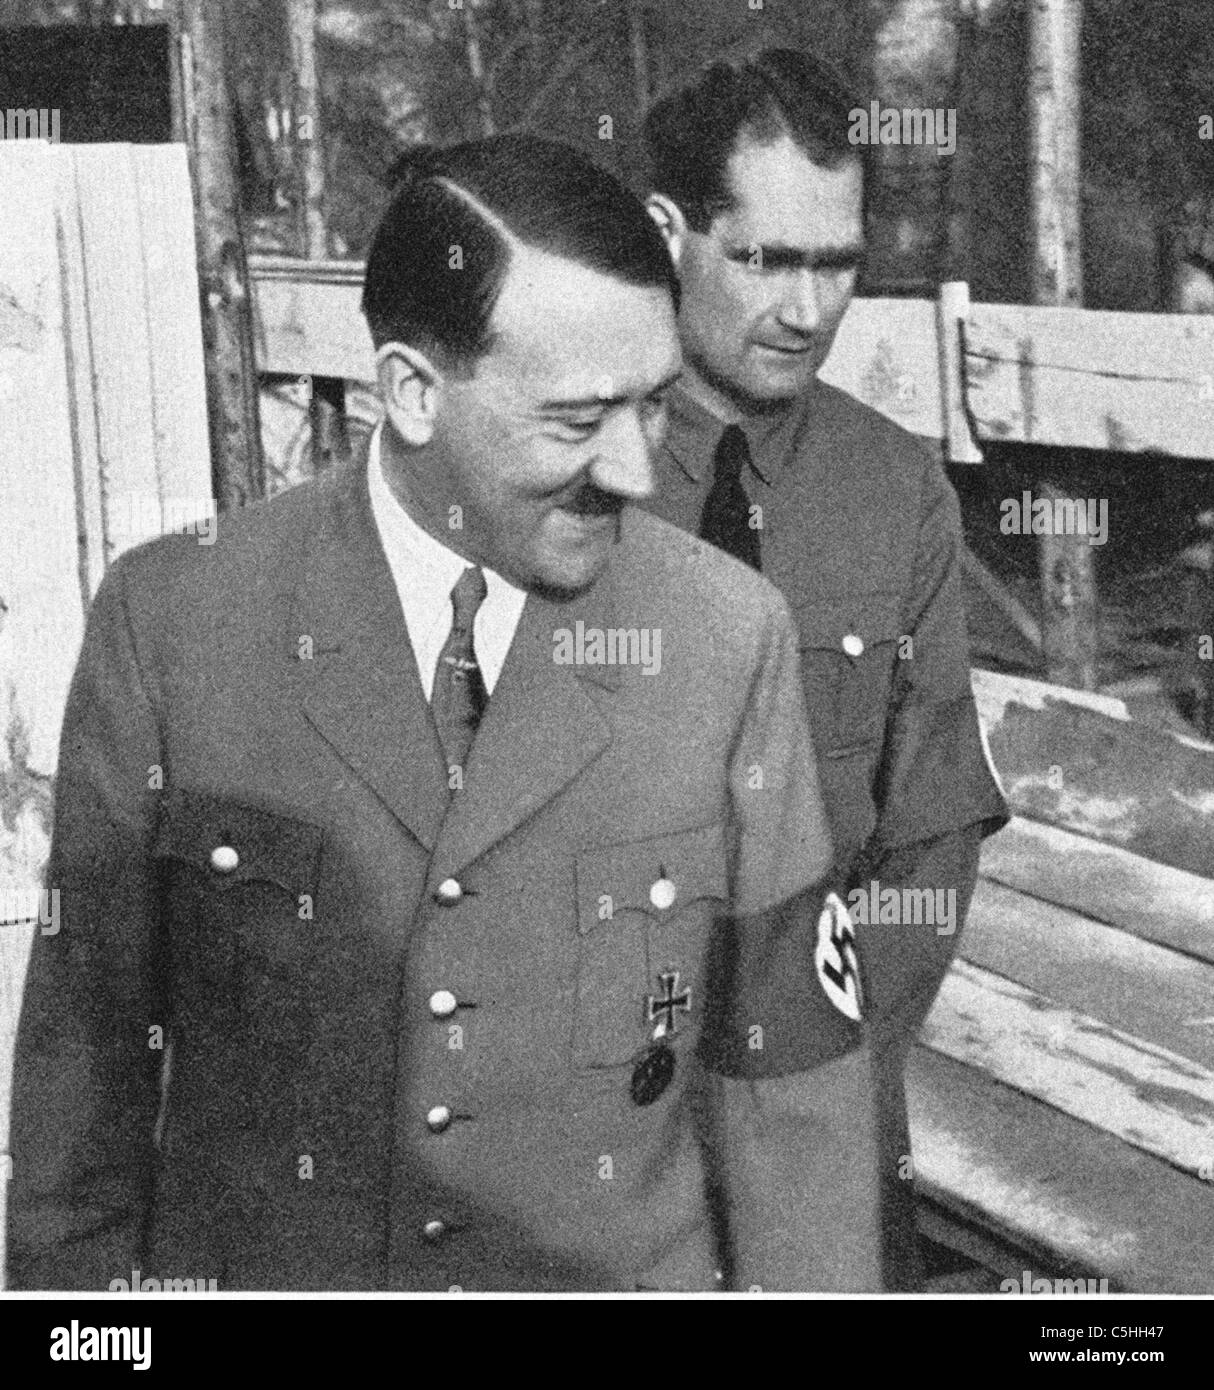 Adolf Hitler mit Rudolf Hess - Hitlers Krieg Zeit Stellvertreter. Aus dem Archiv des Pressedienstes Portrait Stockfoto